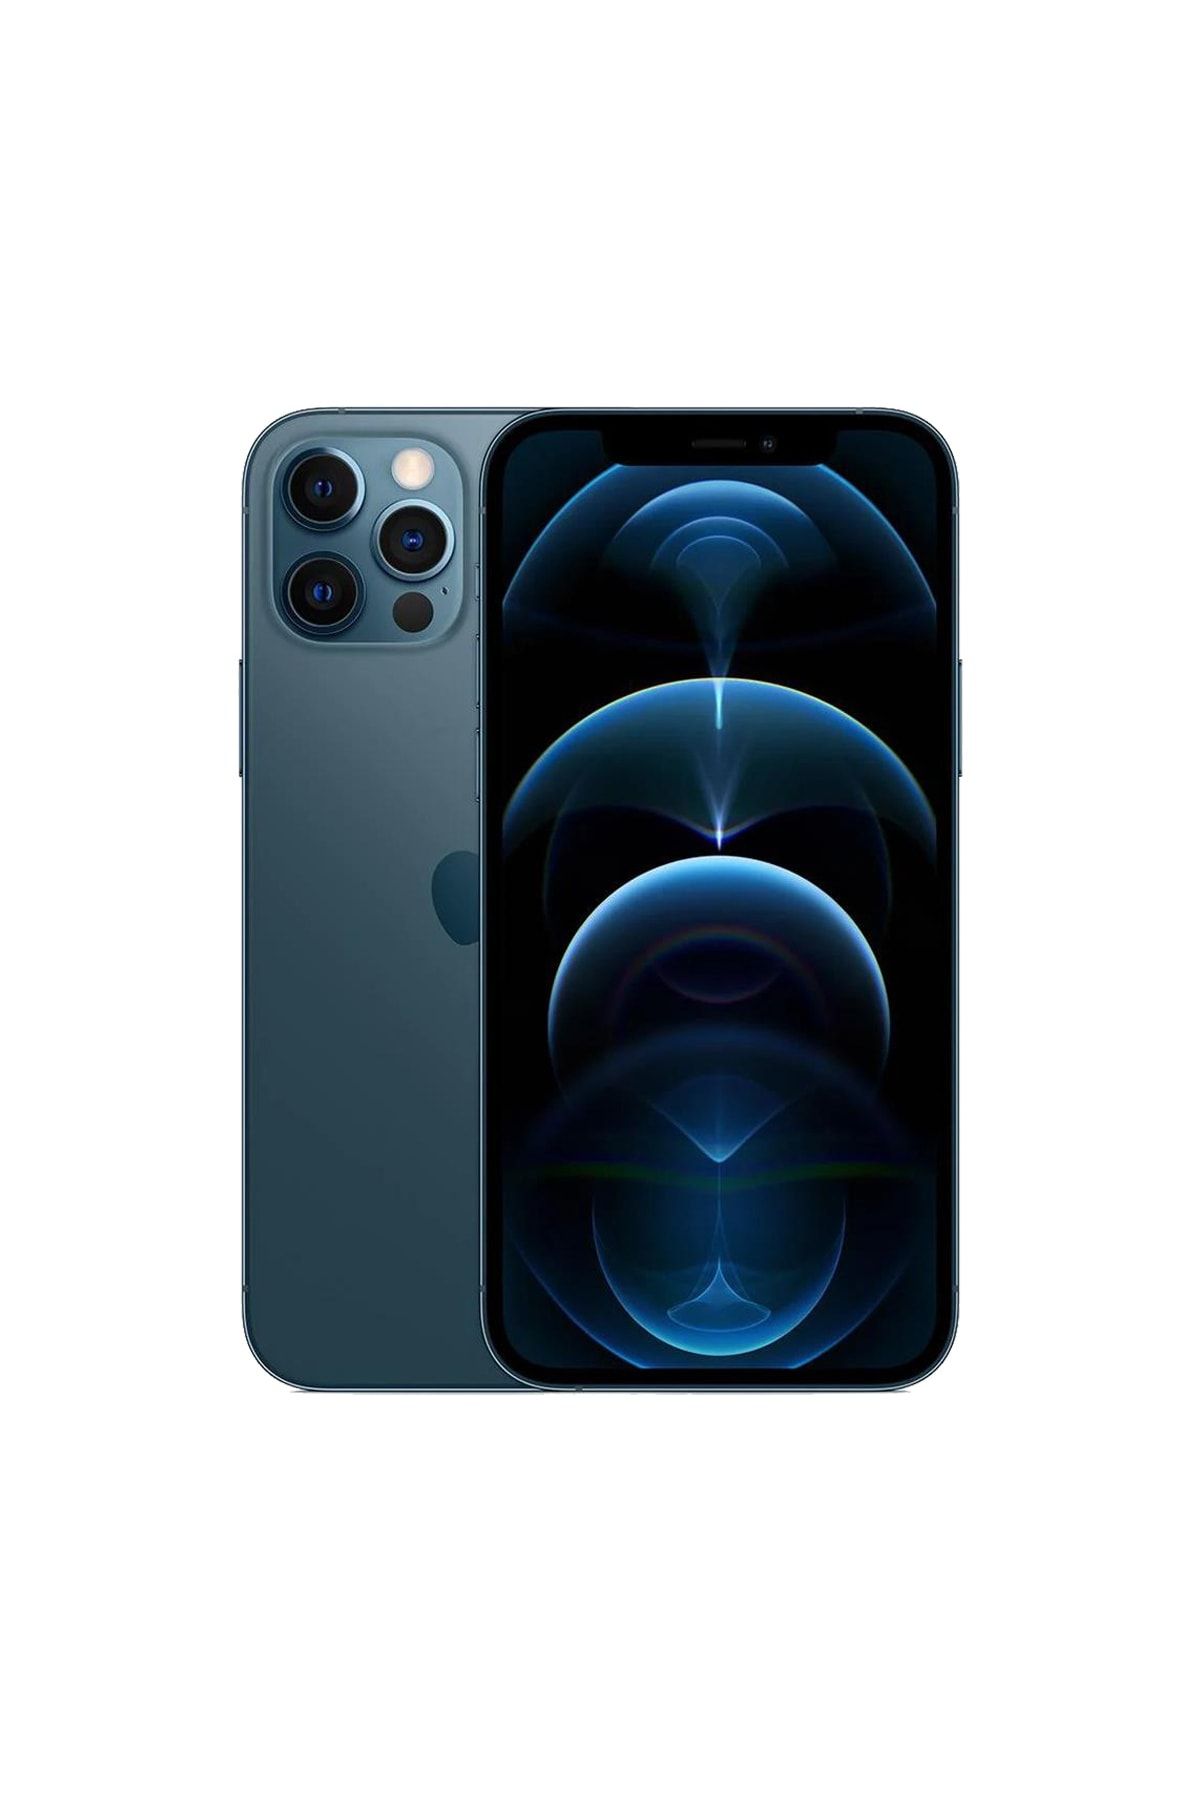 Apple Yenilenmiş iPhone 12 Pro 256 GB B Kalite Pasifik Mavi